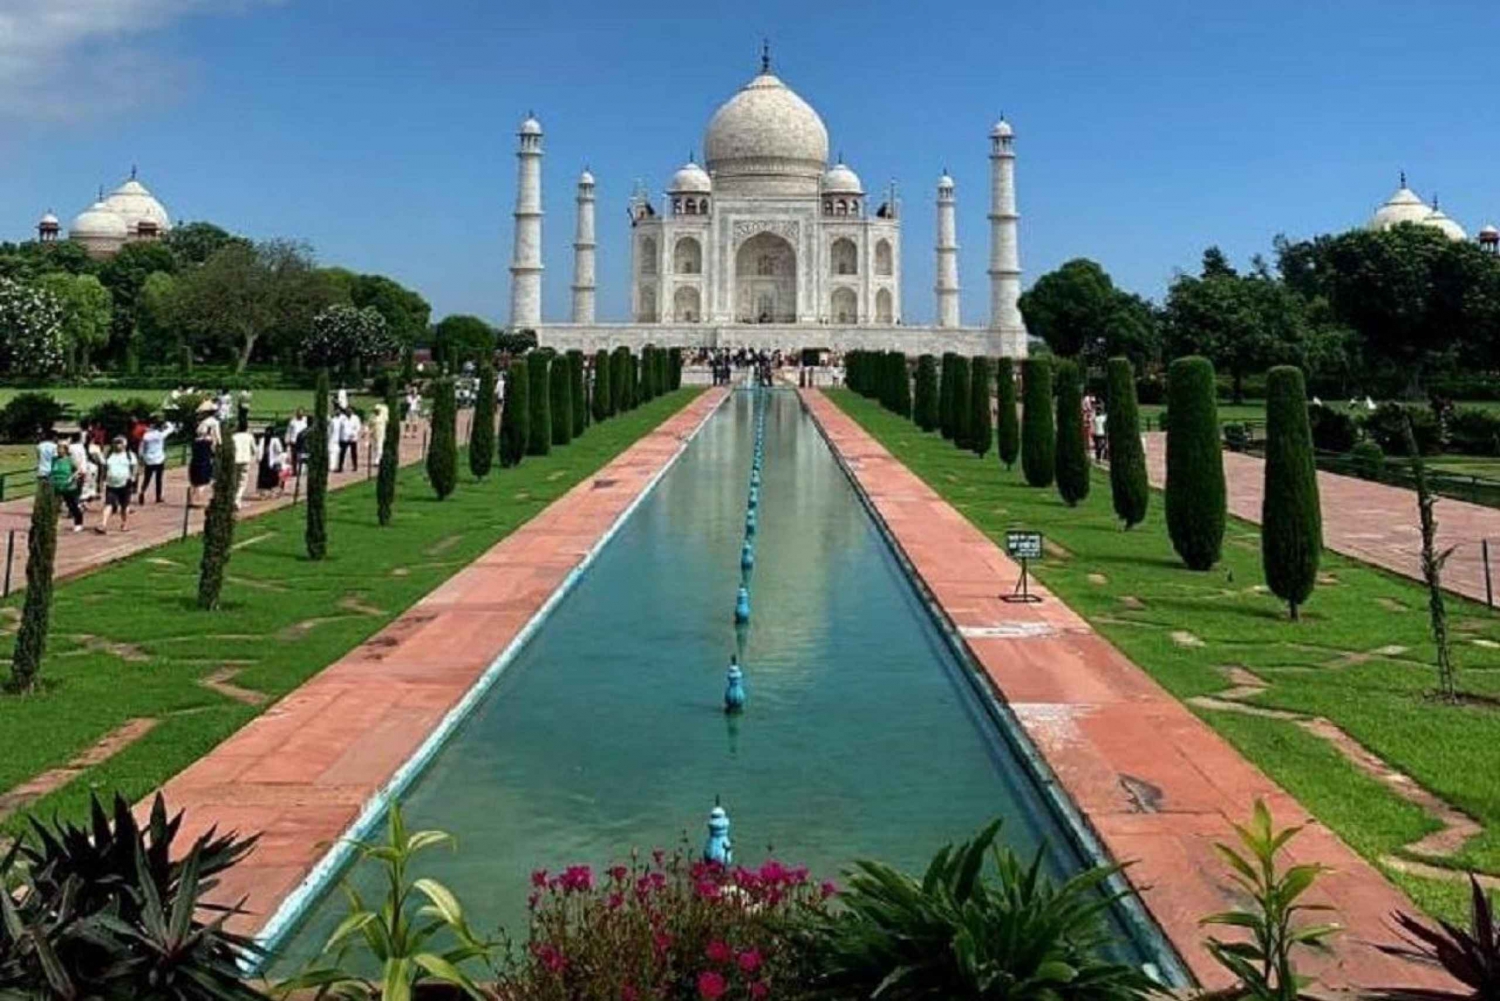 Excursão com tudo incluído ao Taj Mahal saindo de Délhi no mesmo dia